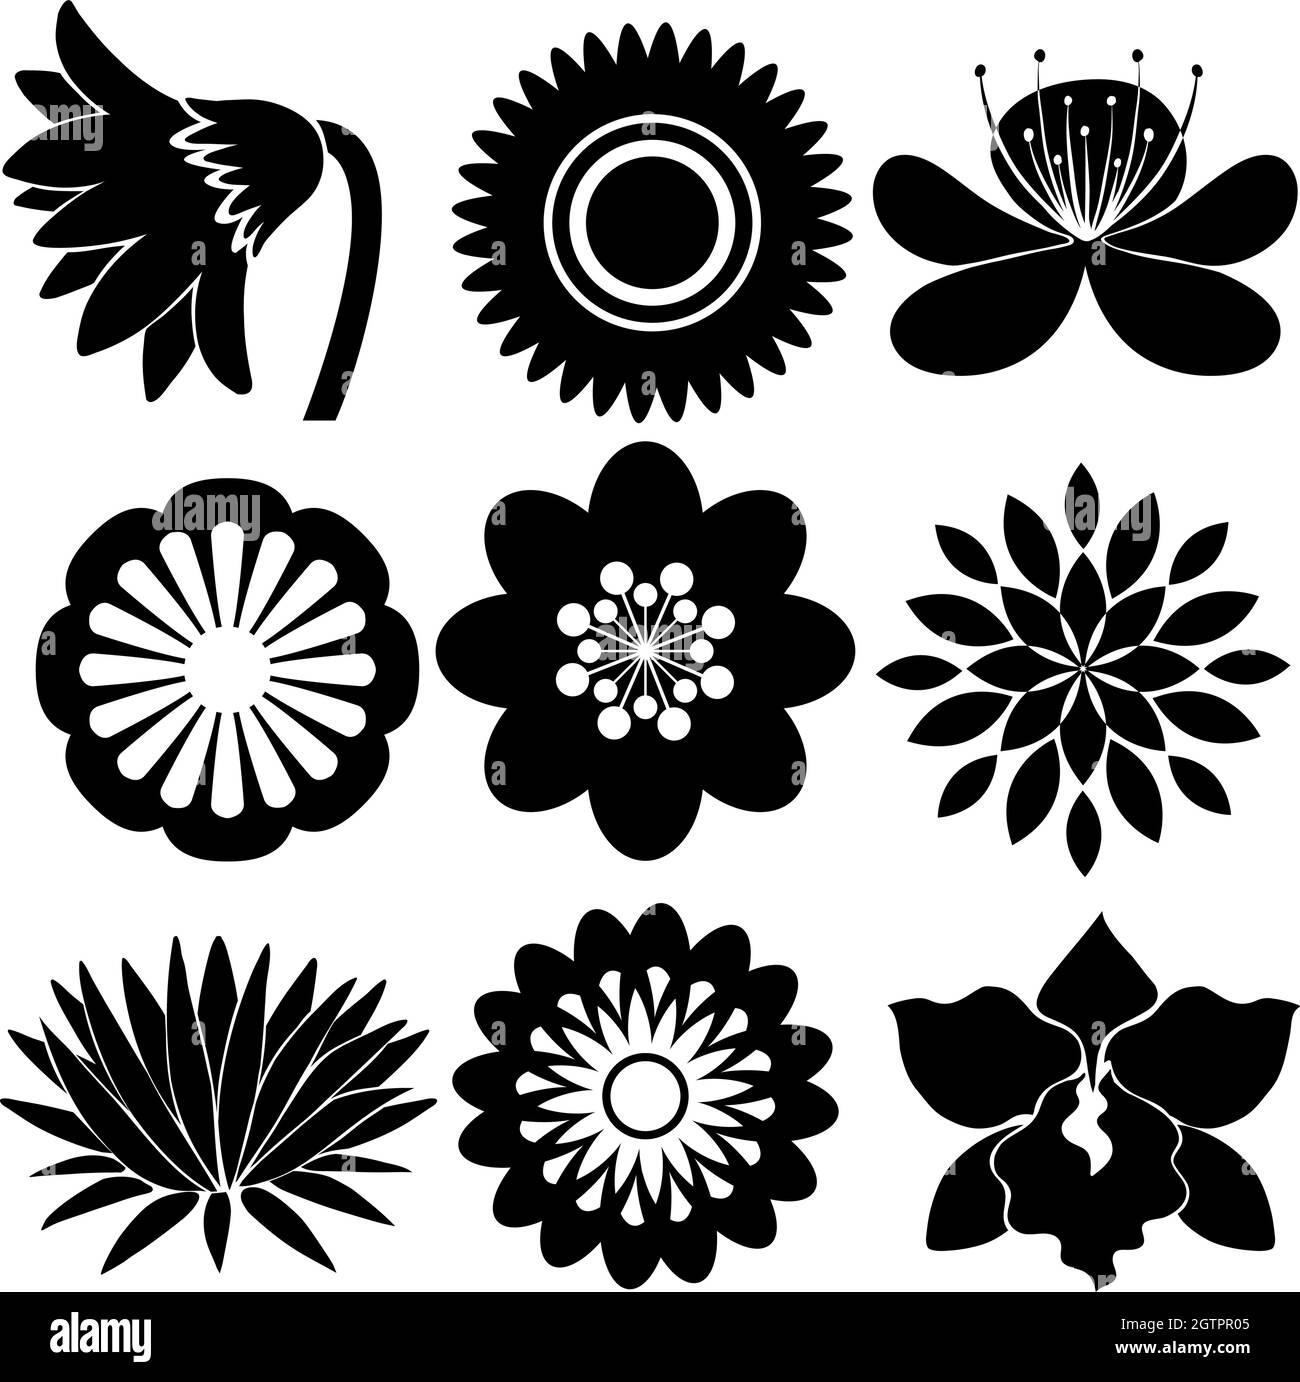 Motifs floraux dans des couleurs noires Illustration de Vecteur